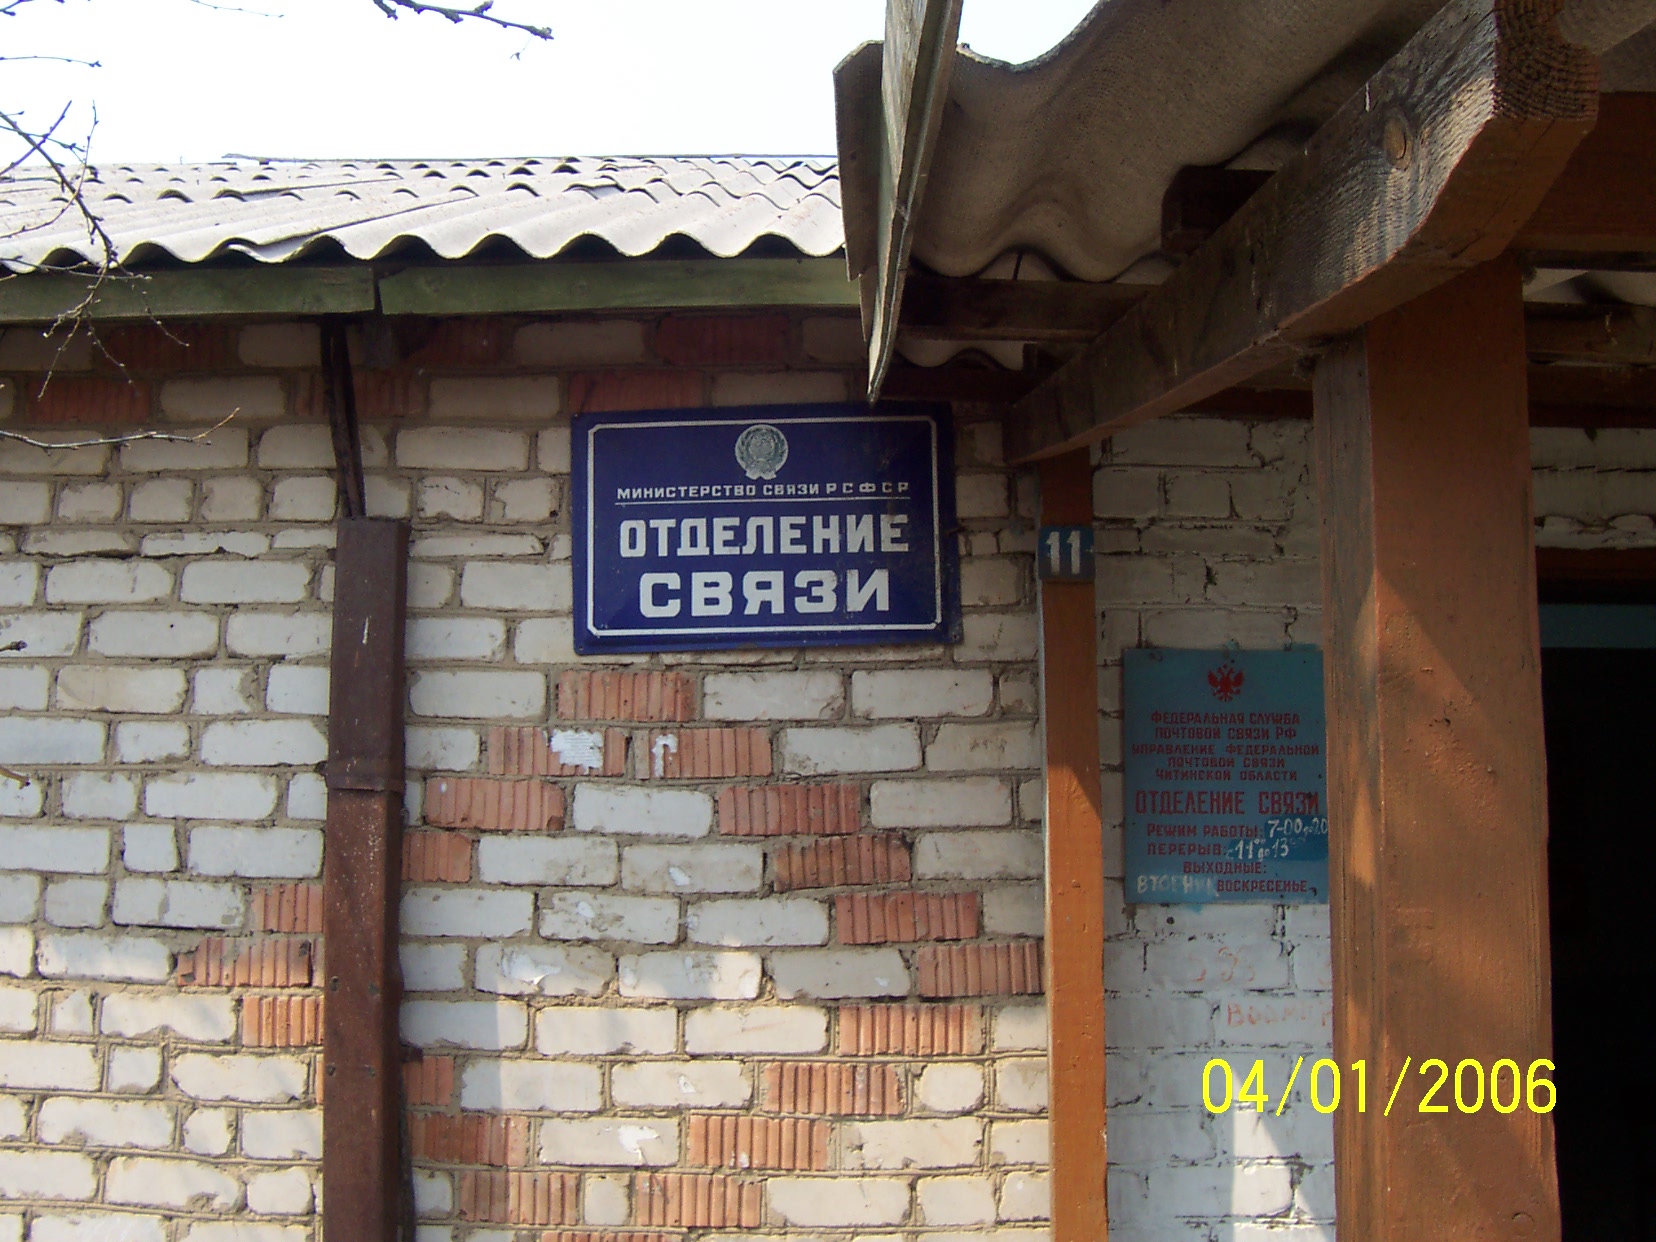 ВХОД, отделение почтовой связи 674532, Забайкальский край, Оловяннинский р-он, Единение